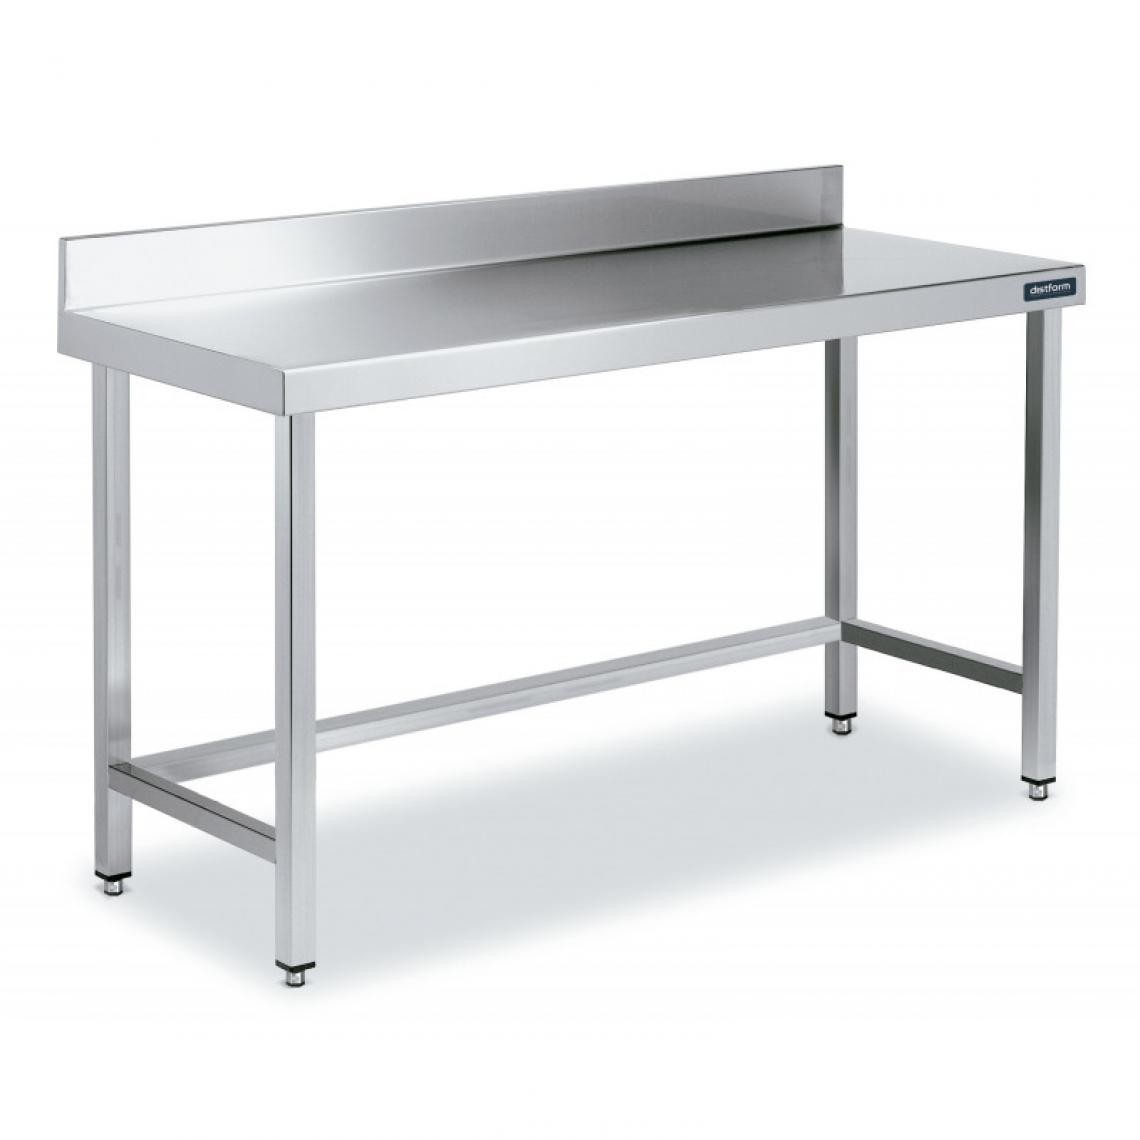 DISTFORM - Table Adossée en Inox avec Renforts Profondeur 550 mm - Distform - Acier inoxydable2000x550 - Tables à manger